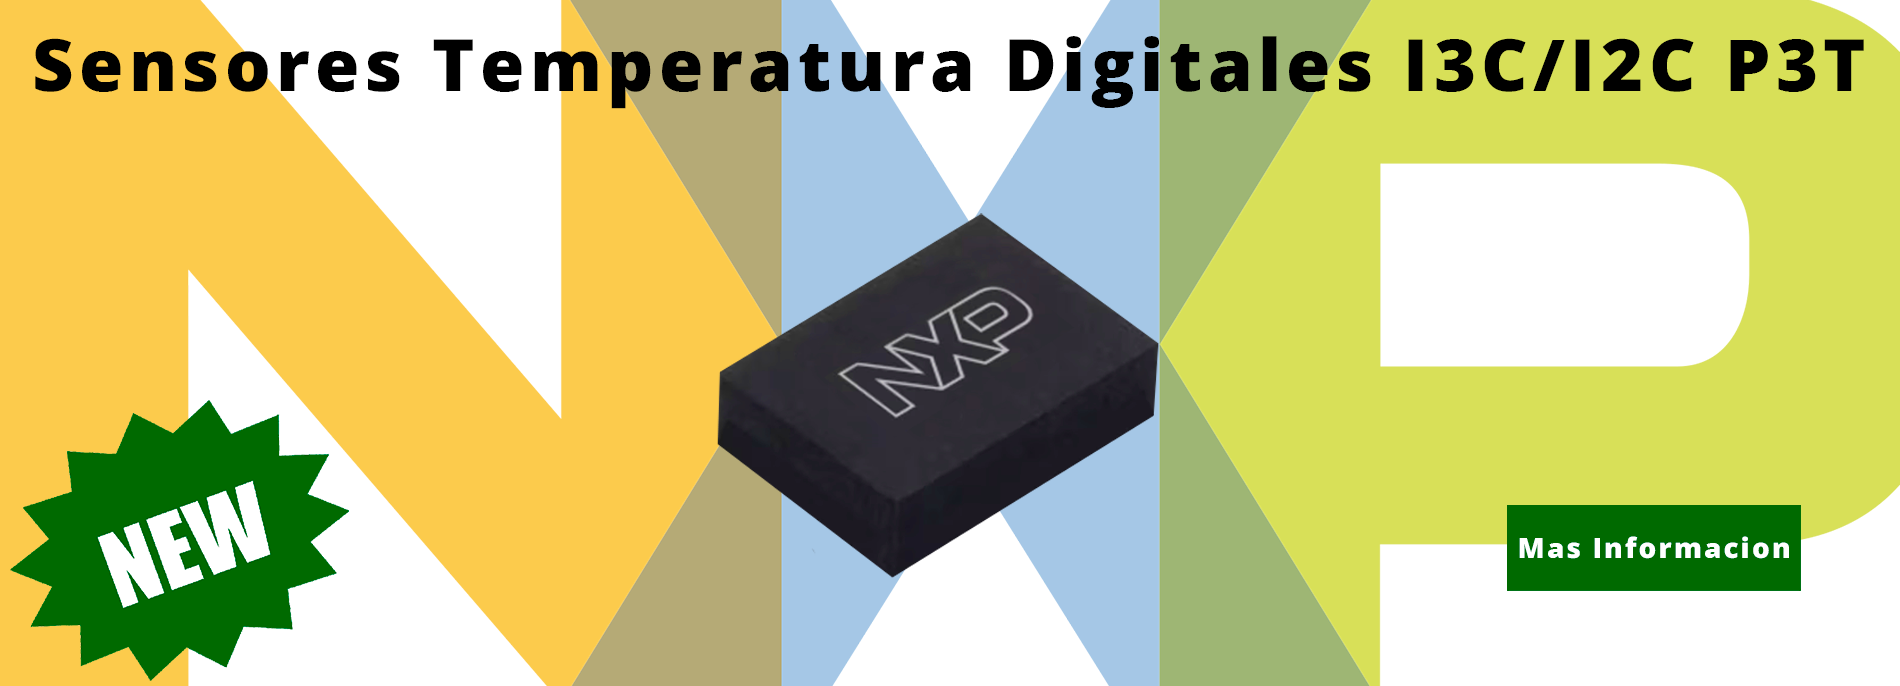 Nuevos sensores de temperatura digitales I3C/I2C de NXP P3T